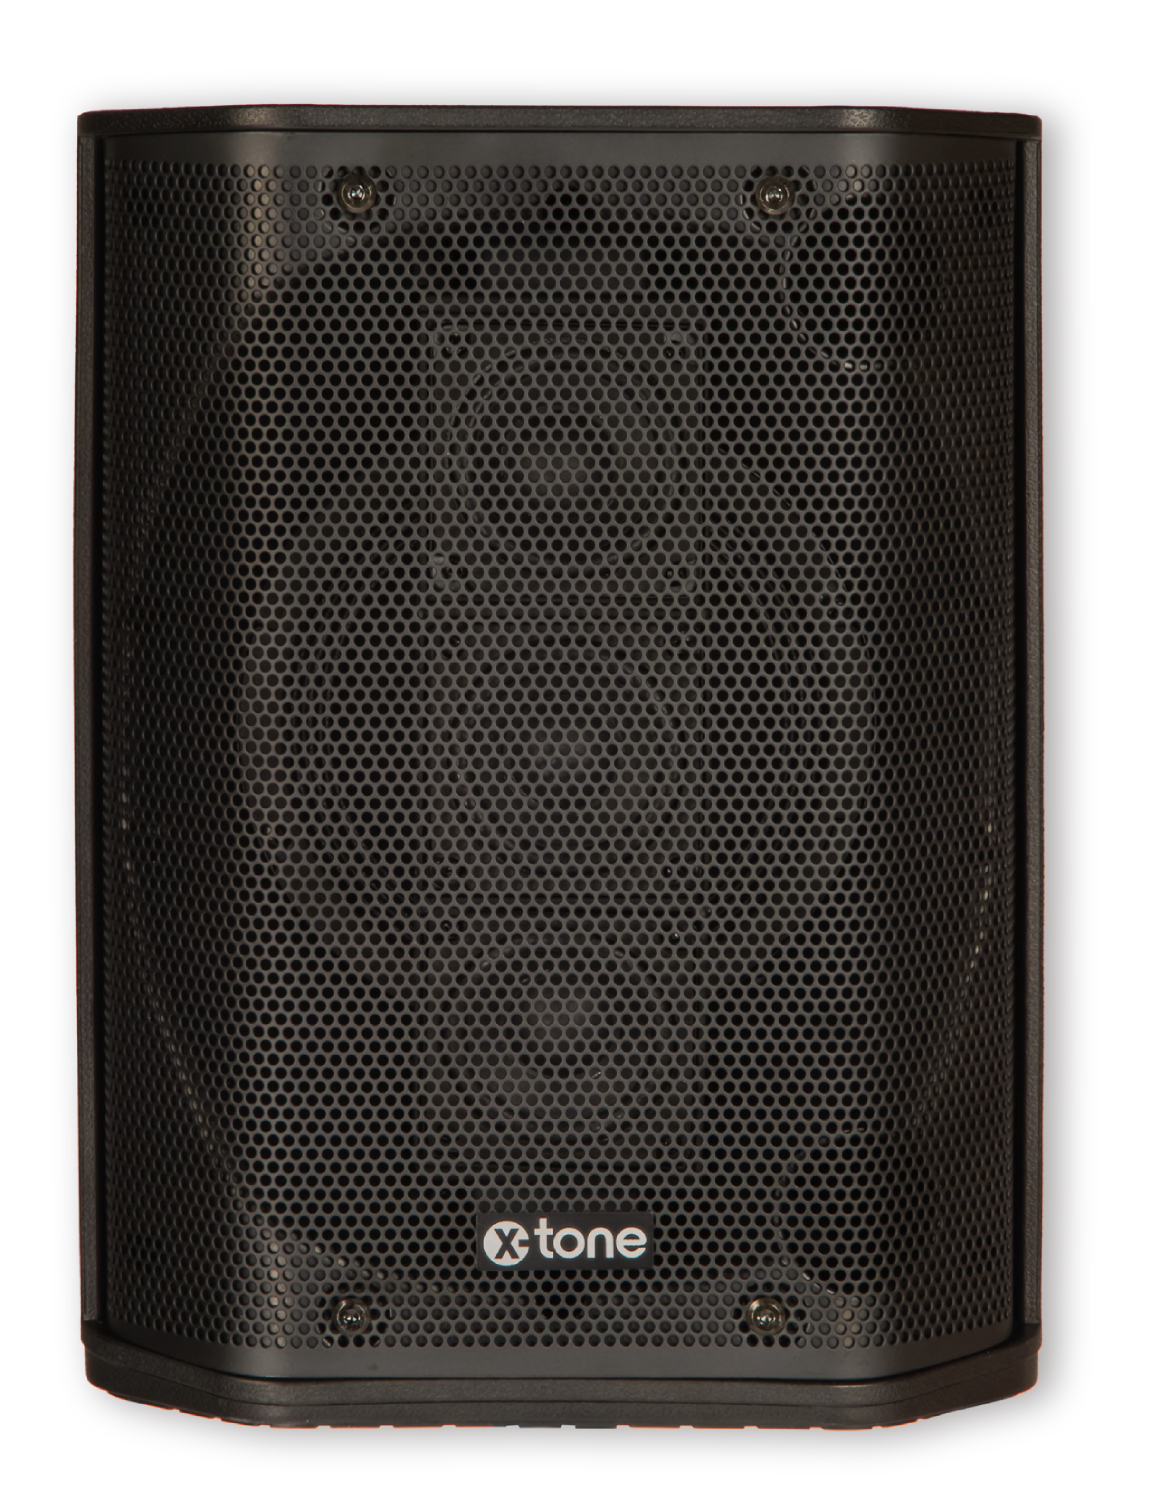 X-tone Y1-b - Sistema de sonorización portátil - Variation 3